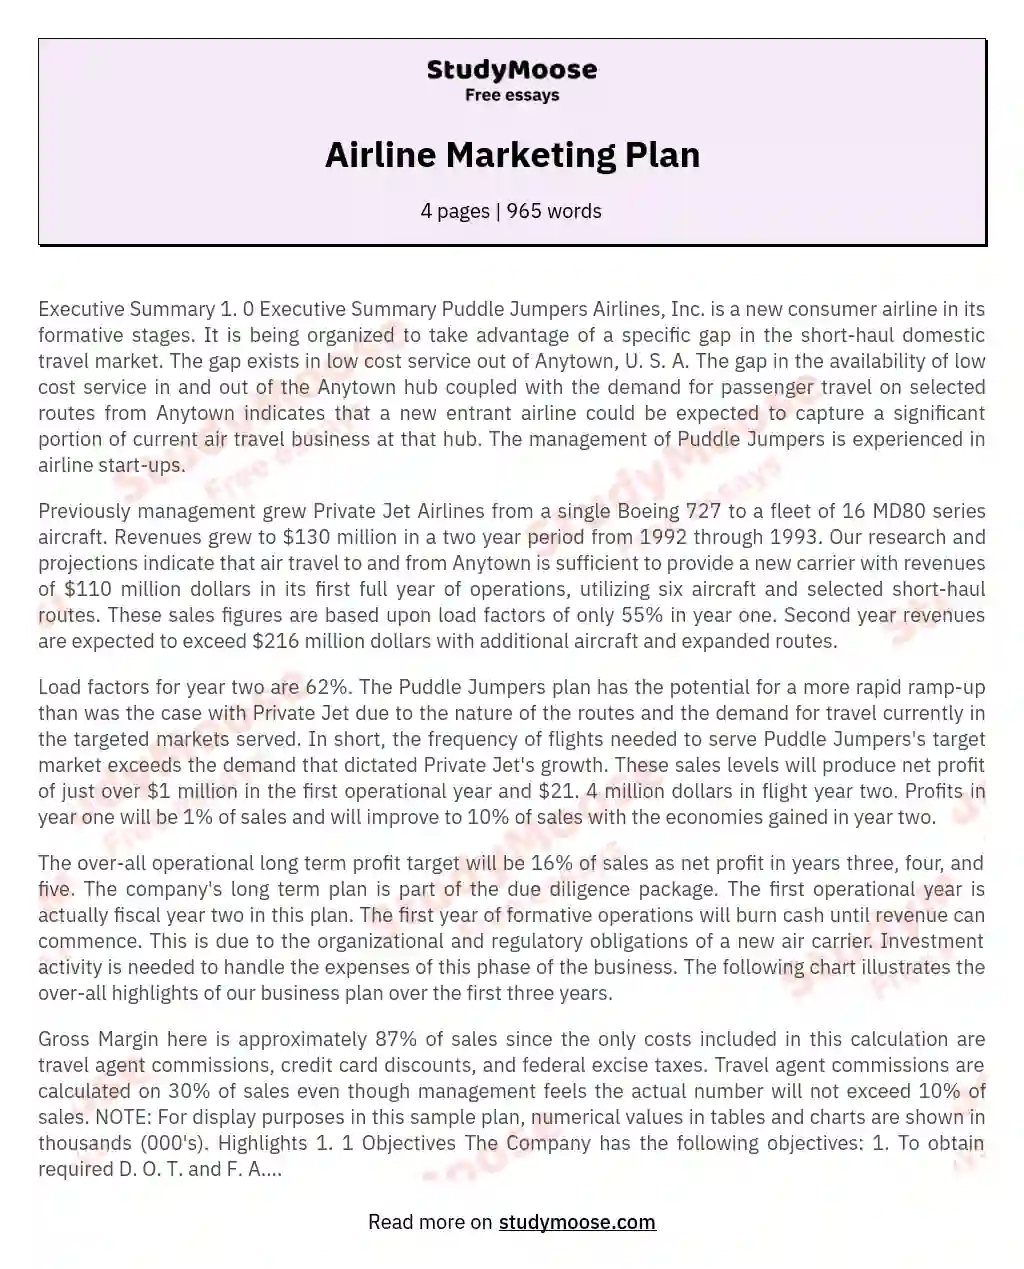 Airline Marketing Plan essay